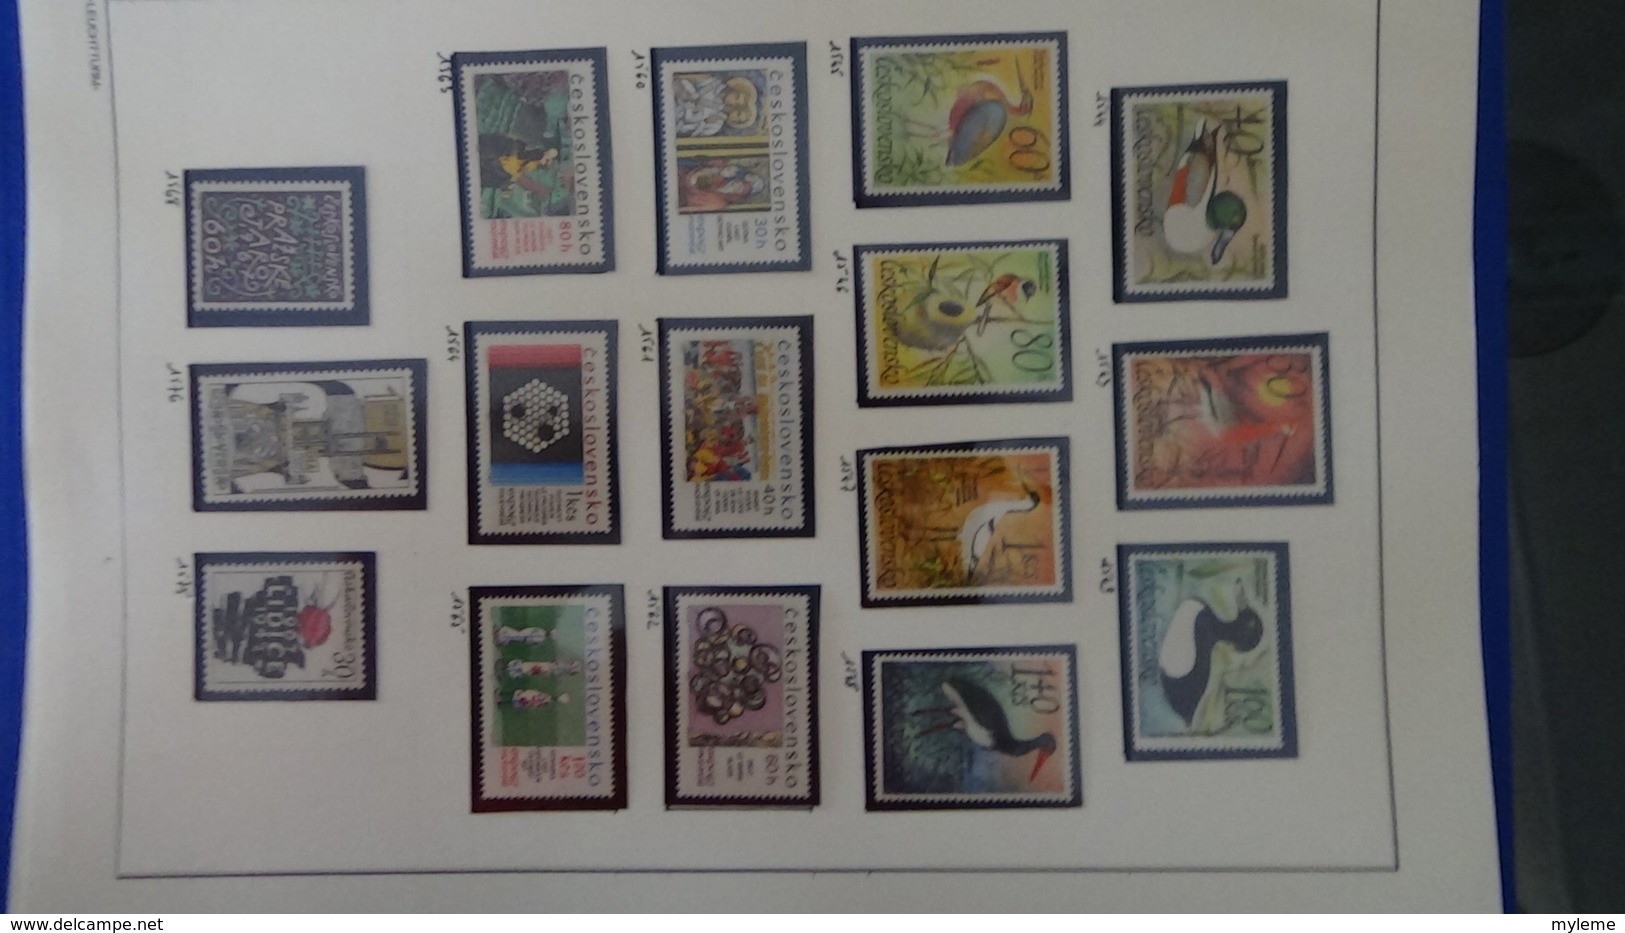 Collection de timbres Tchecoslovaquie ** N° 1037 à 1613  . Voir commentaires